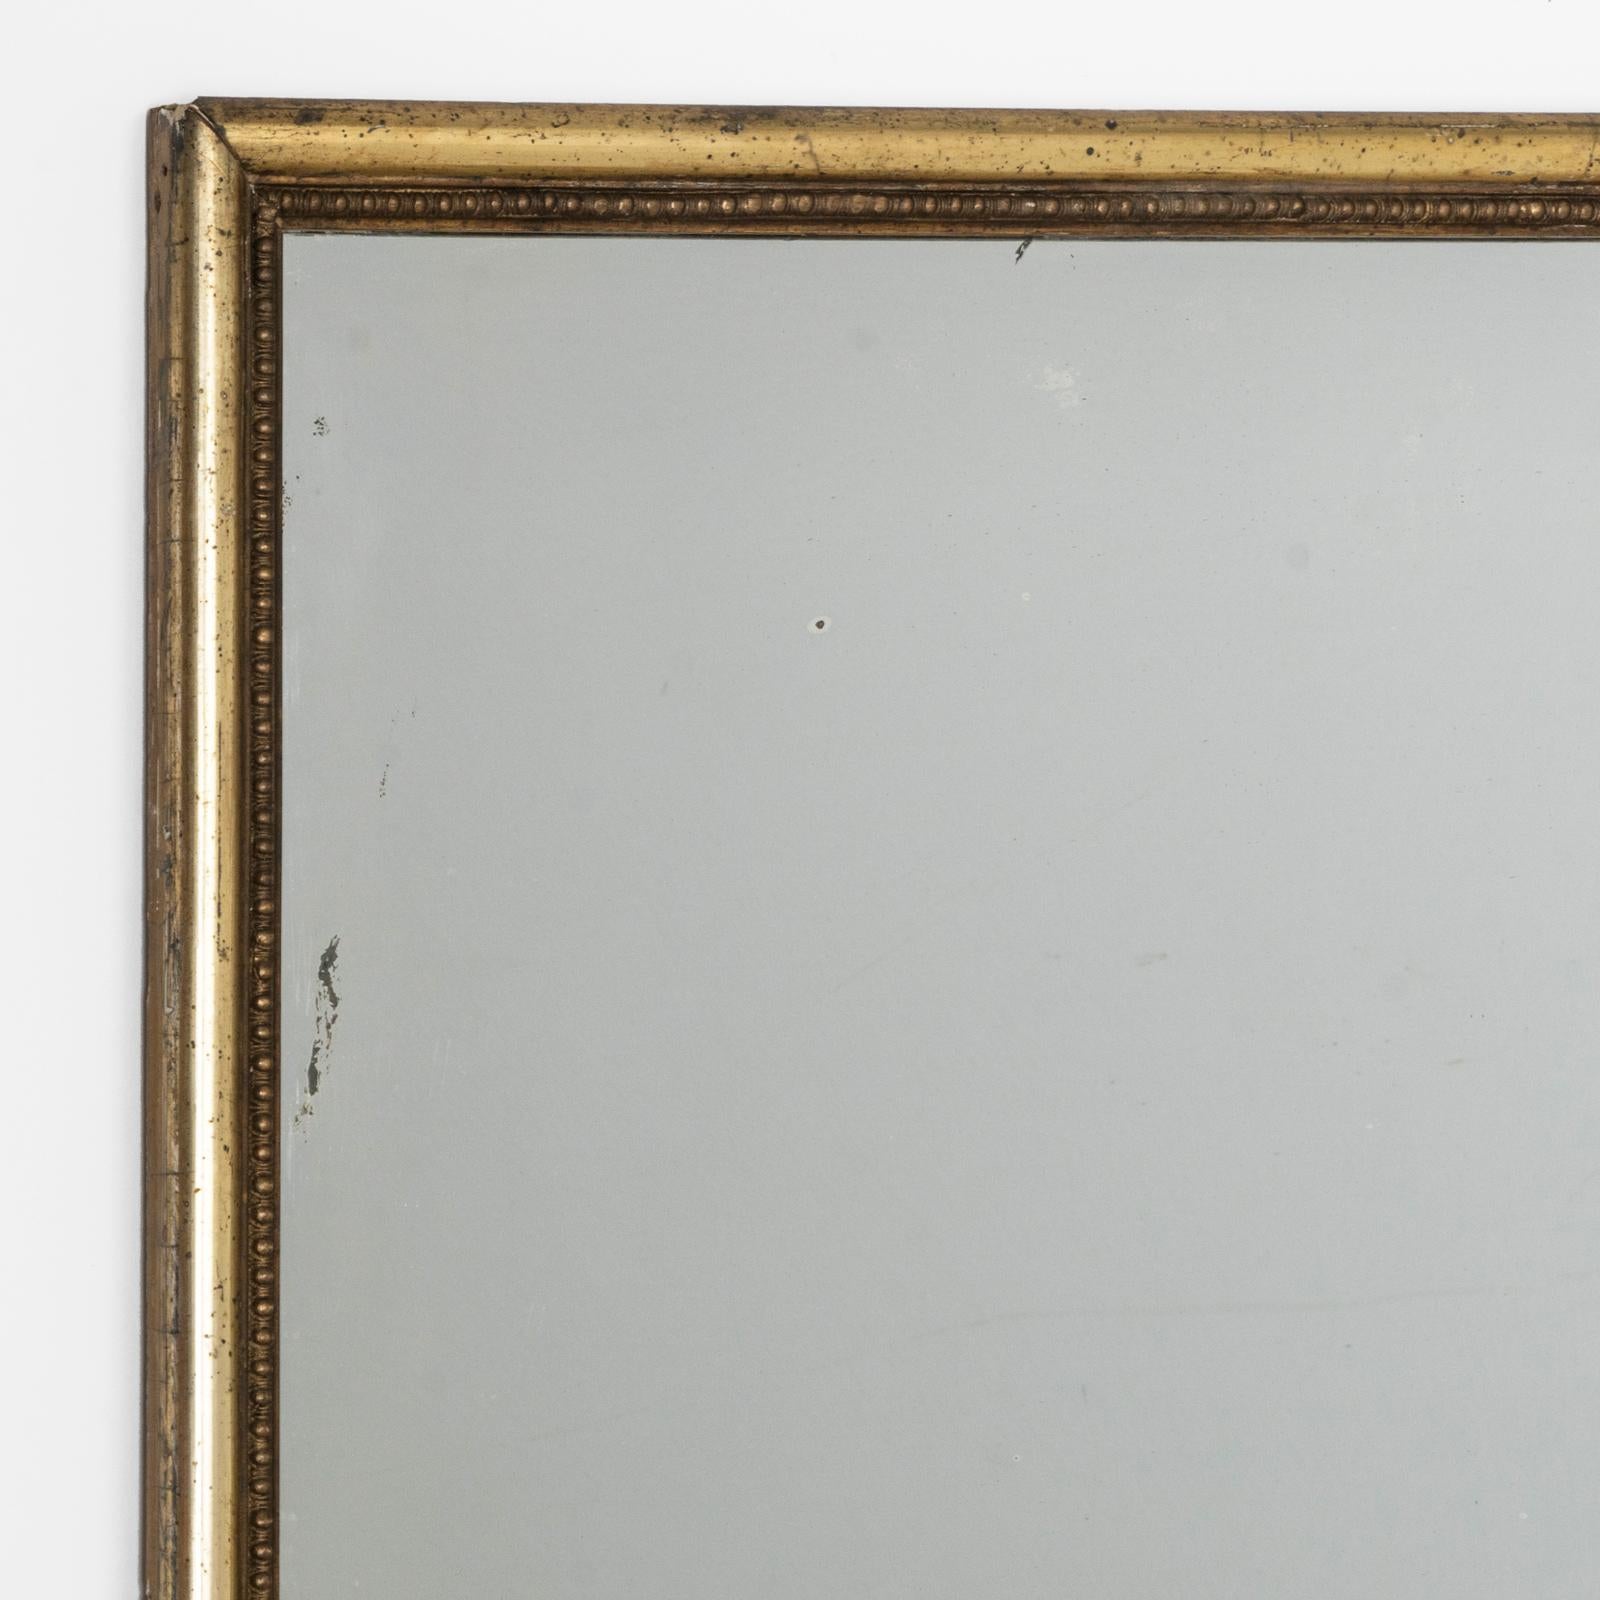 Ein großartiger französischer rechteckiger Spiegel aus Giltwood aus der Jahrhundertwende um 1900 mit einem anmutig subtilen goldenen Rahmen.

Das Spiegelglas trägt einen Hauch von Charakter in Form von ein paar charmanten kleinen Flecken. Diese